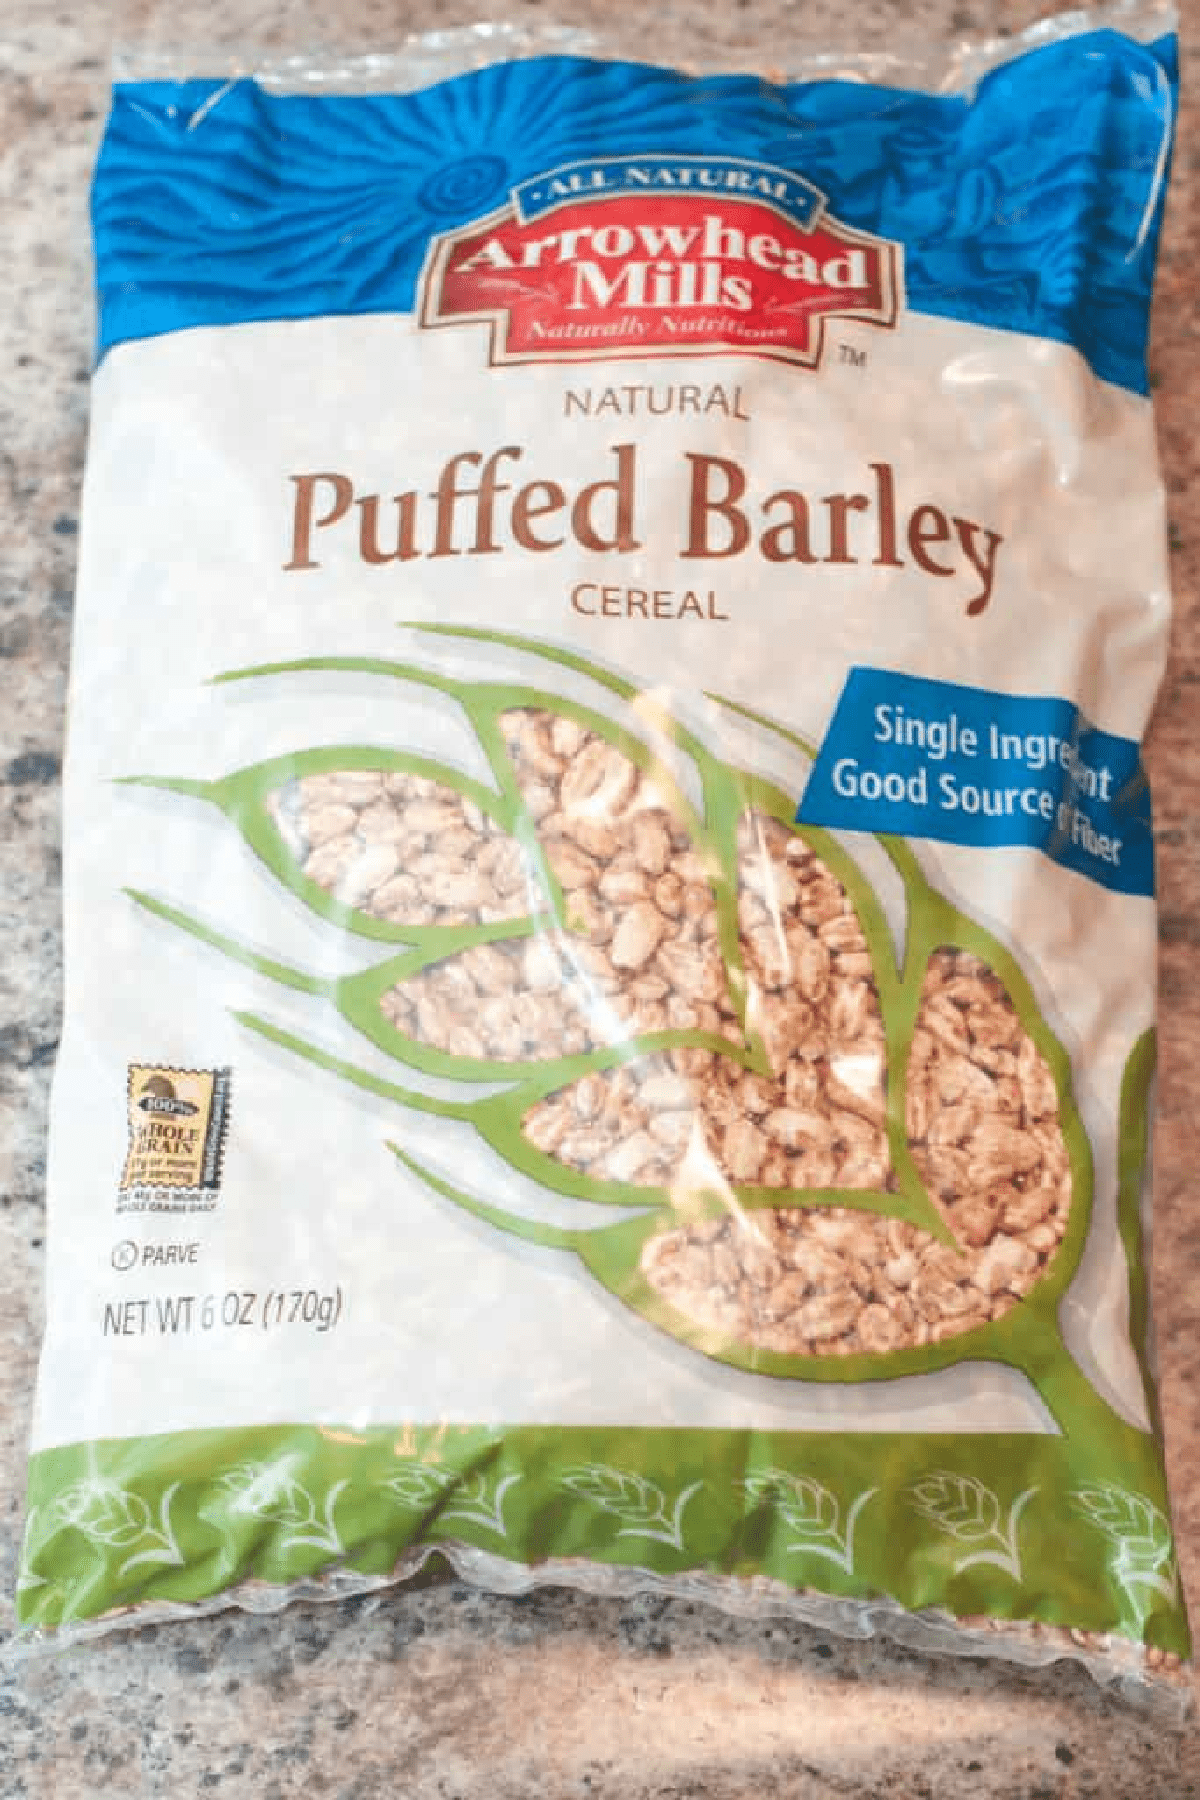 a bag of puffed barley.